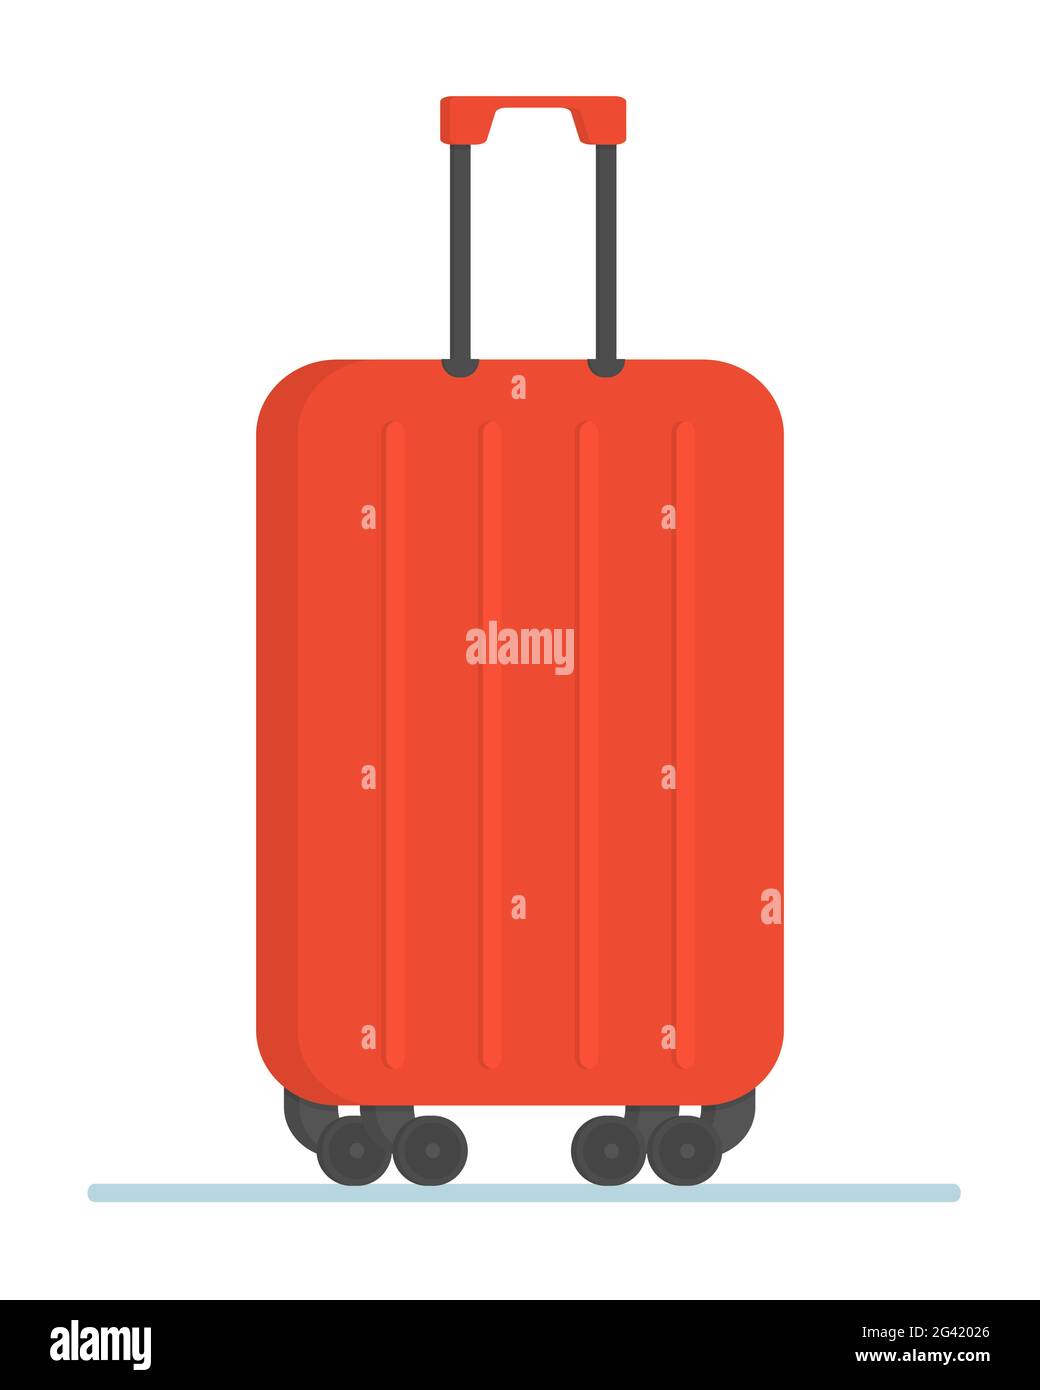 Valigia rossa per bagagli da viaggio. Stile di disegno piatto icone moderne  di illustrazione vettoriale di viaggio per aereo Immagine e Vettoriale -  Alamy